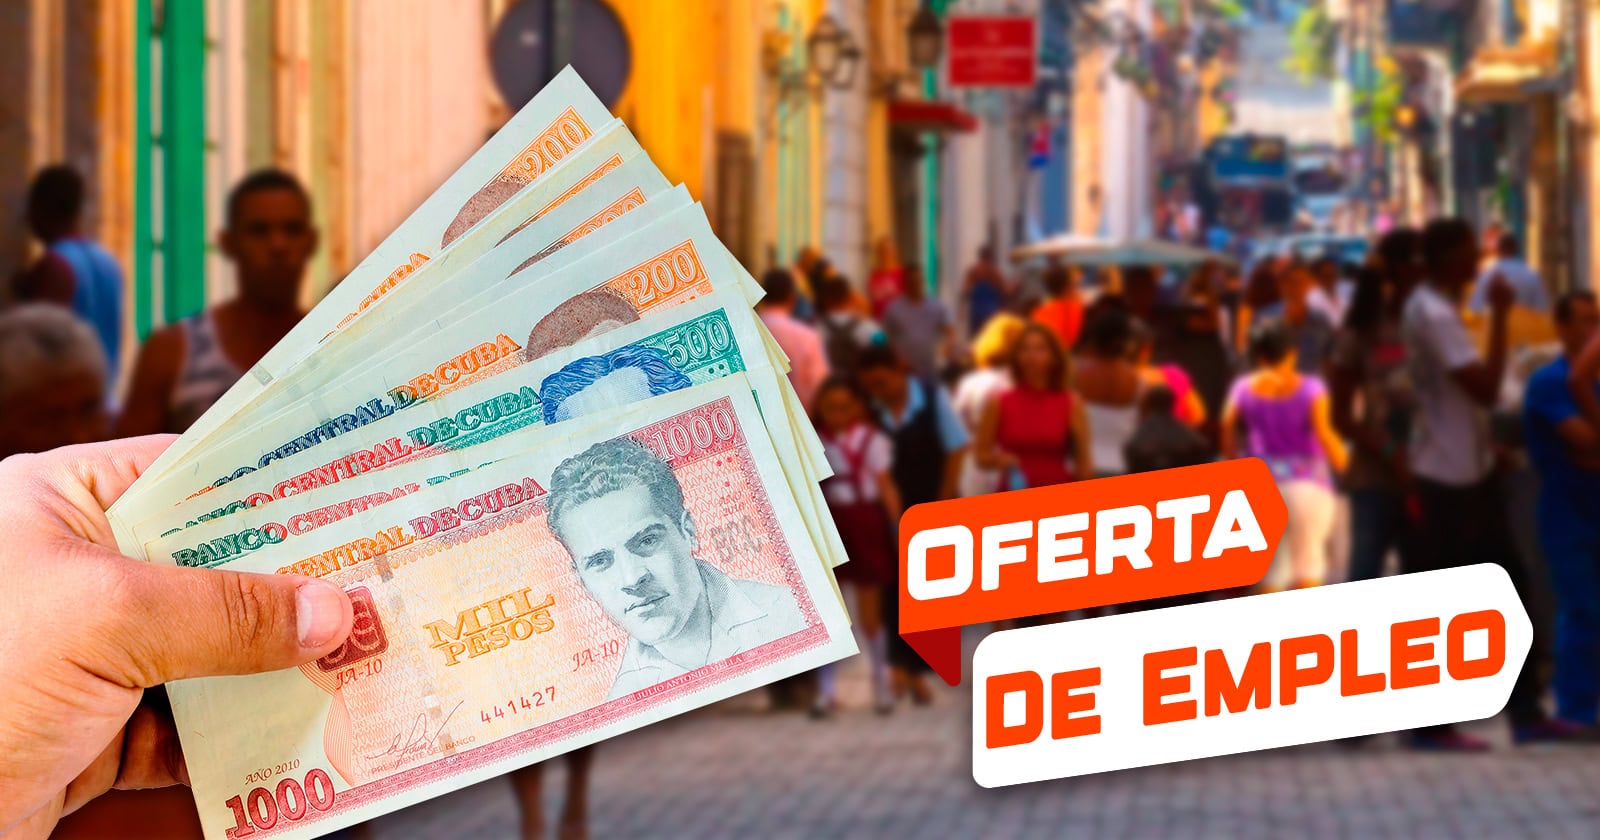 30 000 Pesos de Salario en Esta MiPyme de La Habana que Oferta Empleo: Conoce si Aplicas